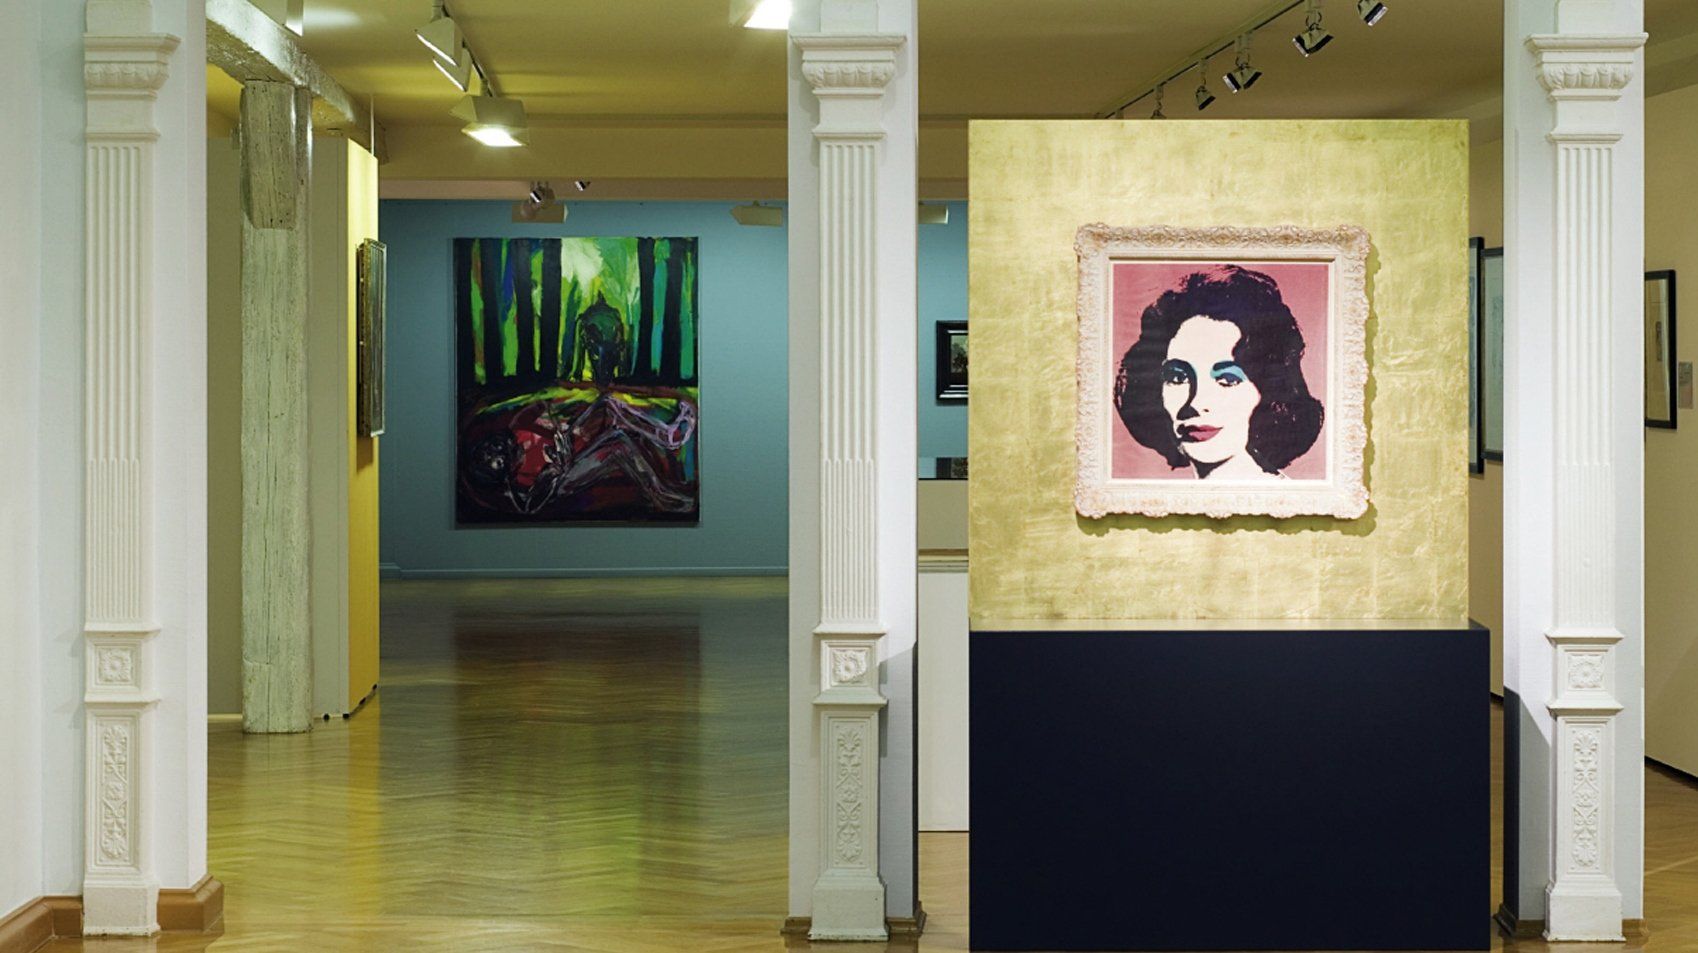 Städtische Galerie Überlingen, Ausstellung, Glanz, Glamour, Antonis van Dyck, Andy Warhol, Foto Abteilung Kultur